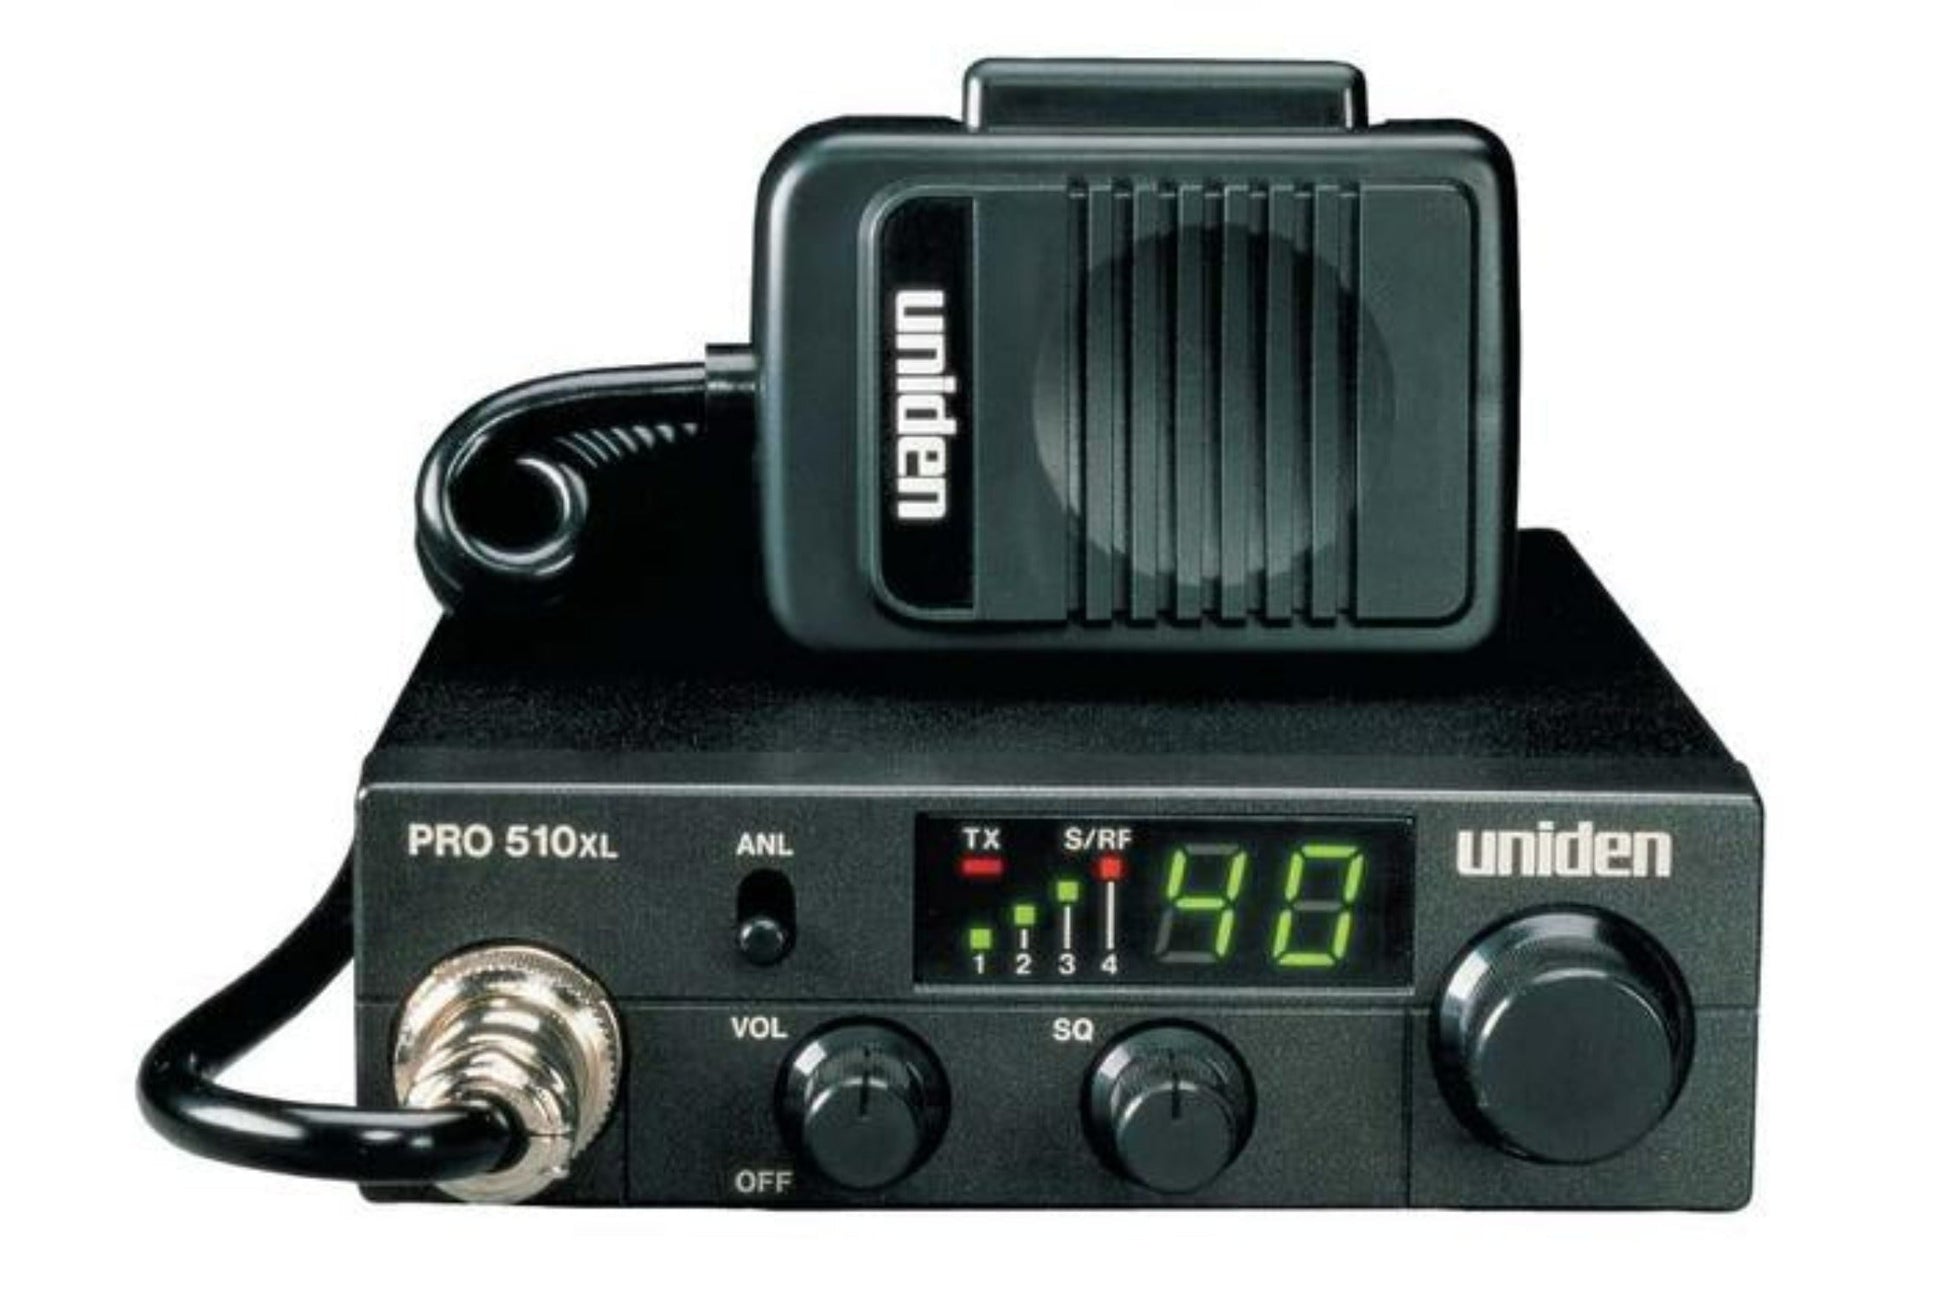 40 channel compact mobile cb radio PRO510XL cb radios uniden